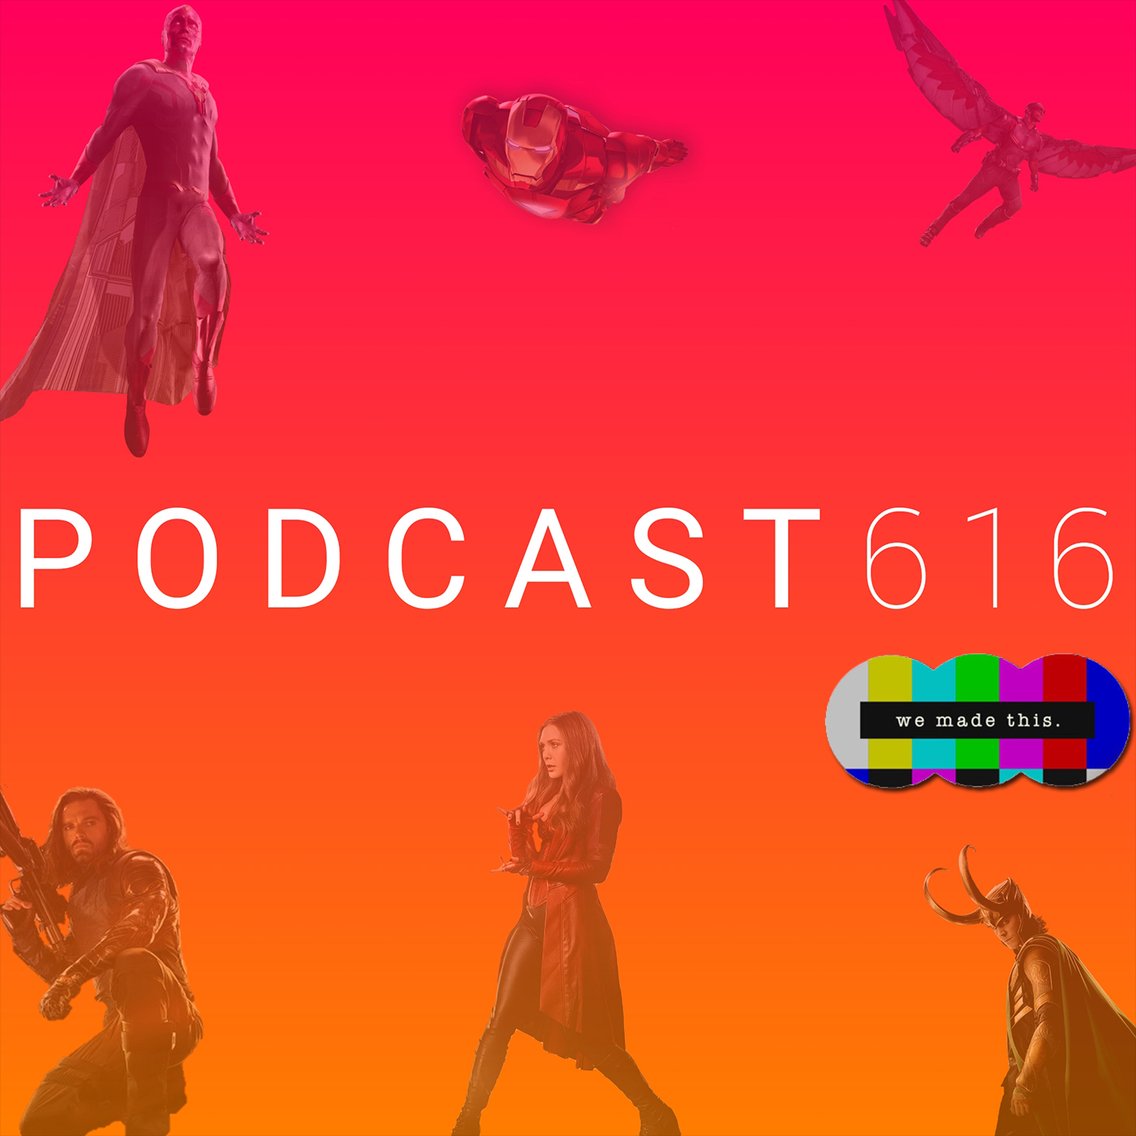 Podcast-616: A Marvel Universe Podcast - imagen de portada
